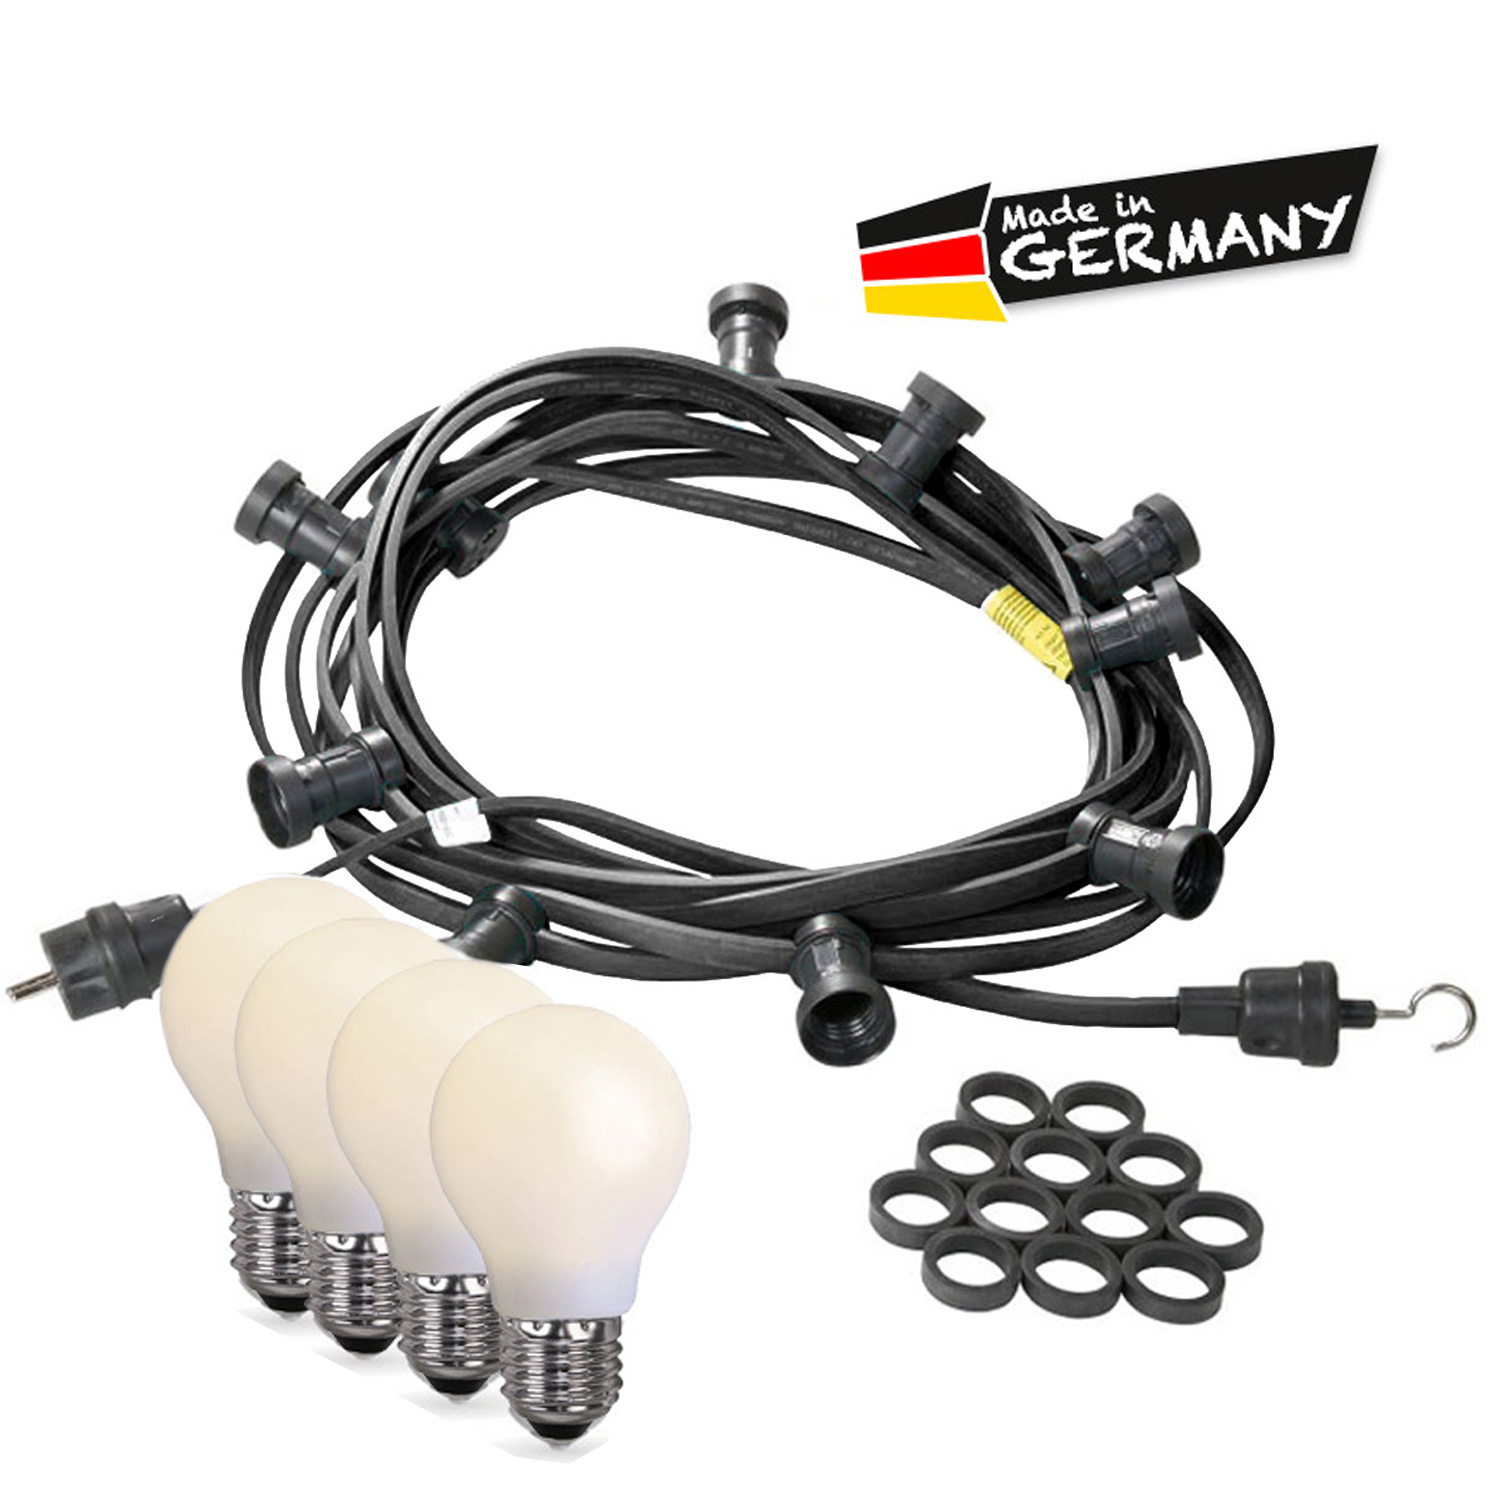 Illu-/Partylichterkette 10m - Außen - Made in Germany - 10 bruchfeste opale LED Tropfenlampen